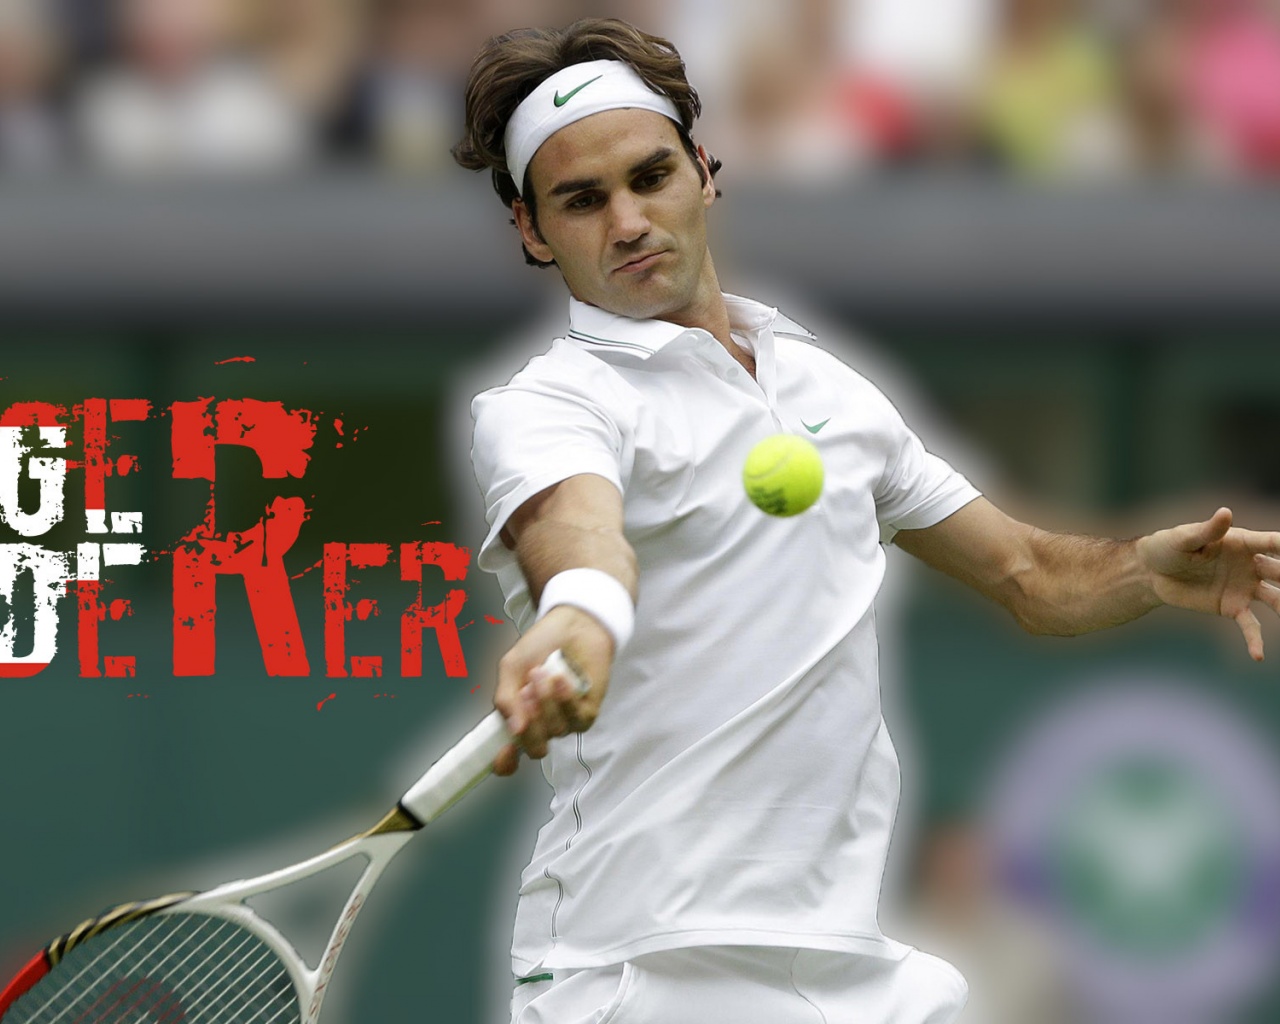 Roger Federer 2014 Wimbledon